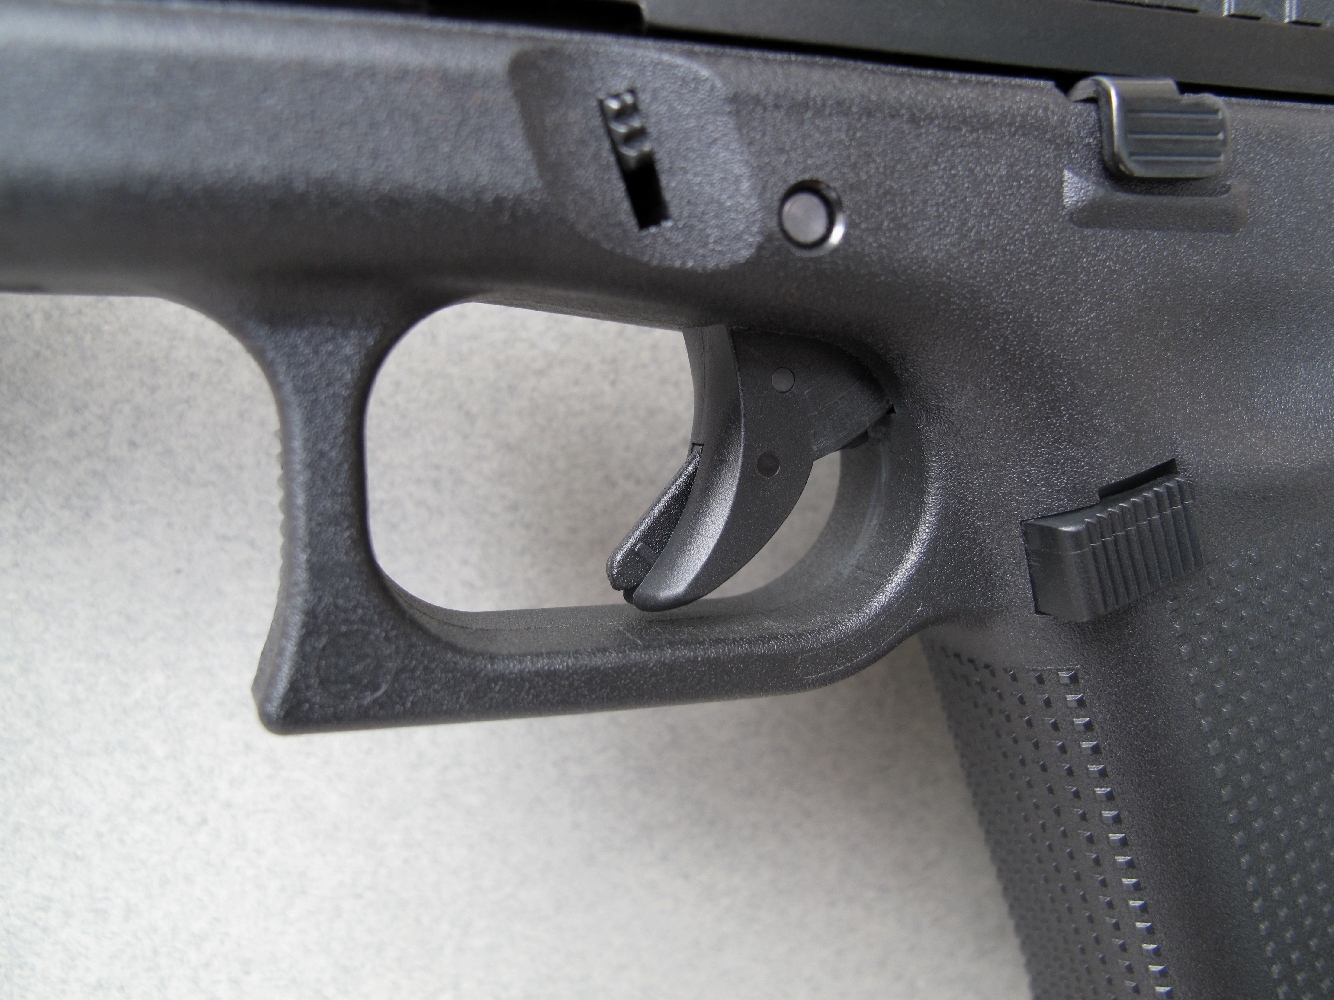 Le G44 hérite de la platine Safe Action qui a largement contribué au succès des pistolets Glock. Le fait que la queue de détente soit, comme ici, en position avancée implique que le mécanisme est obligatoirement armé.